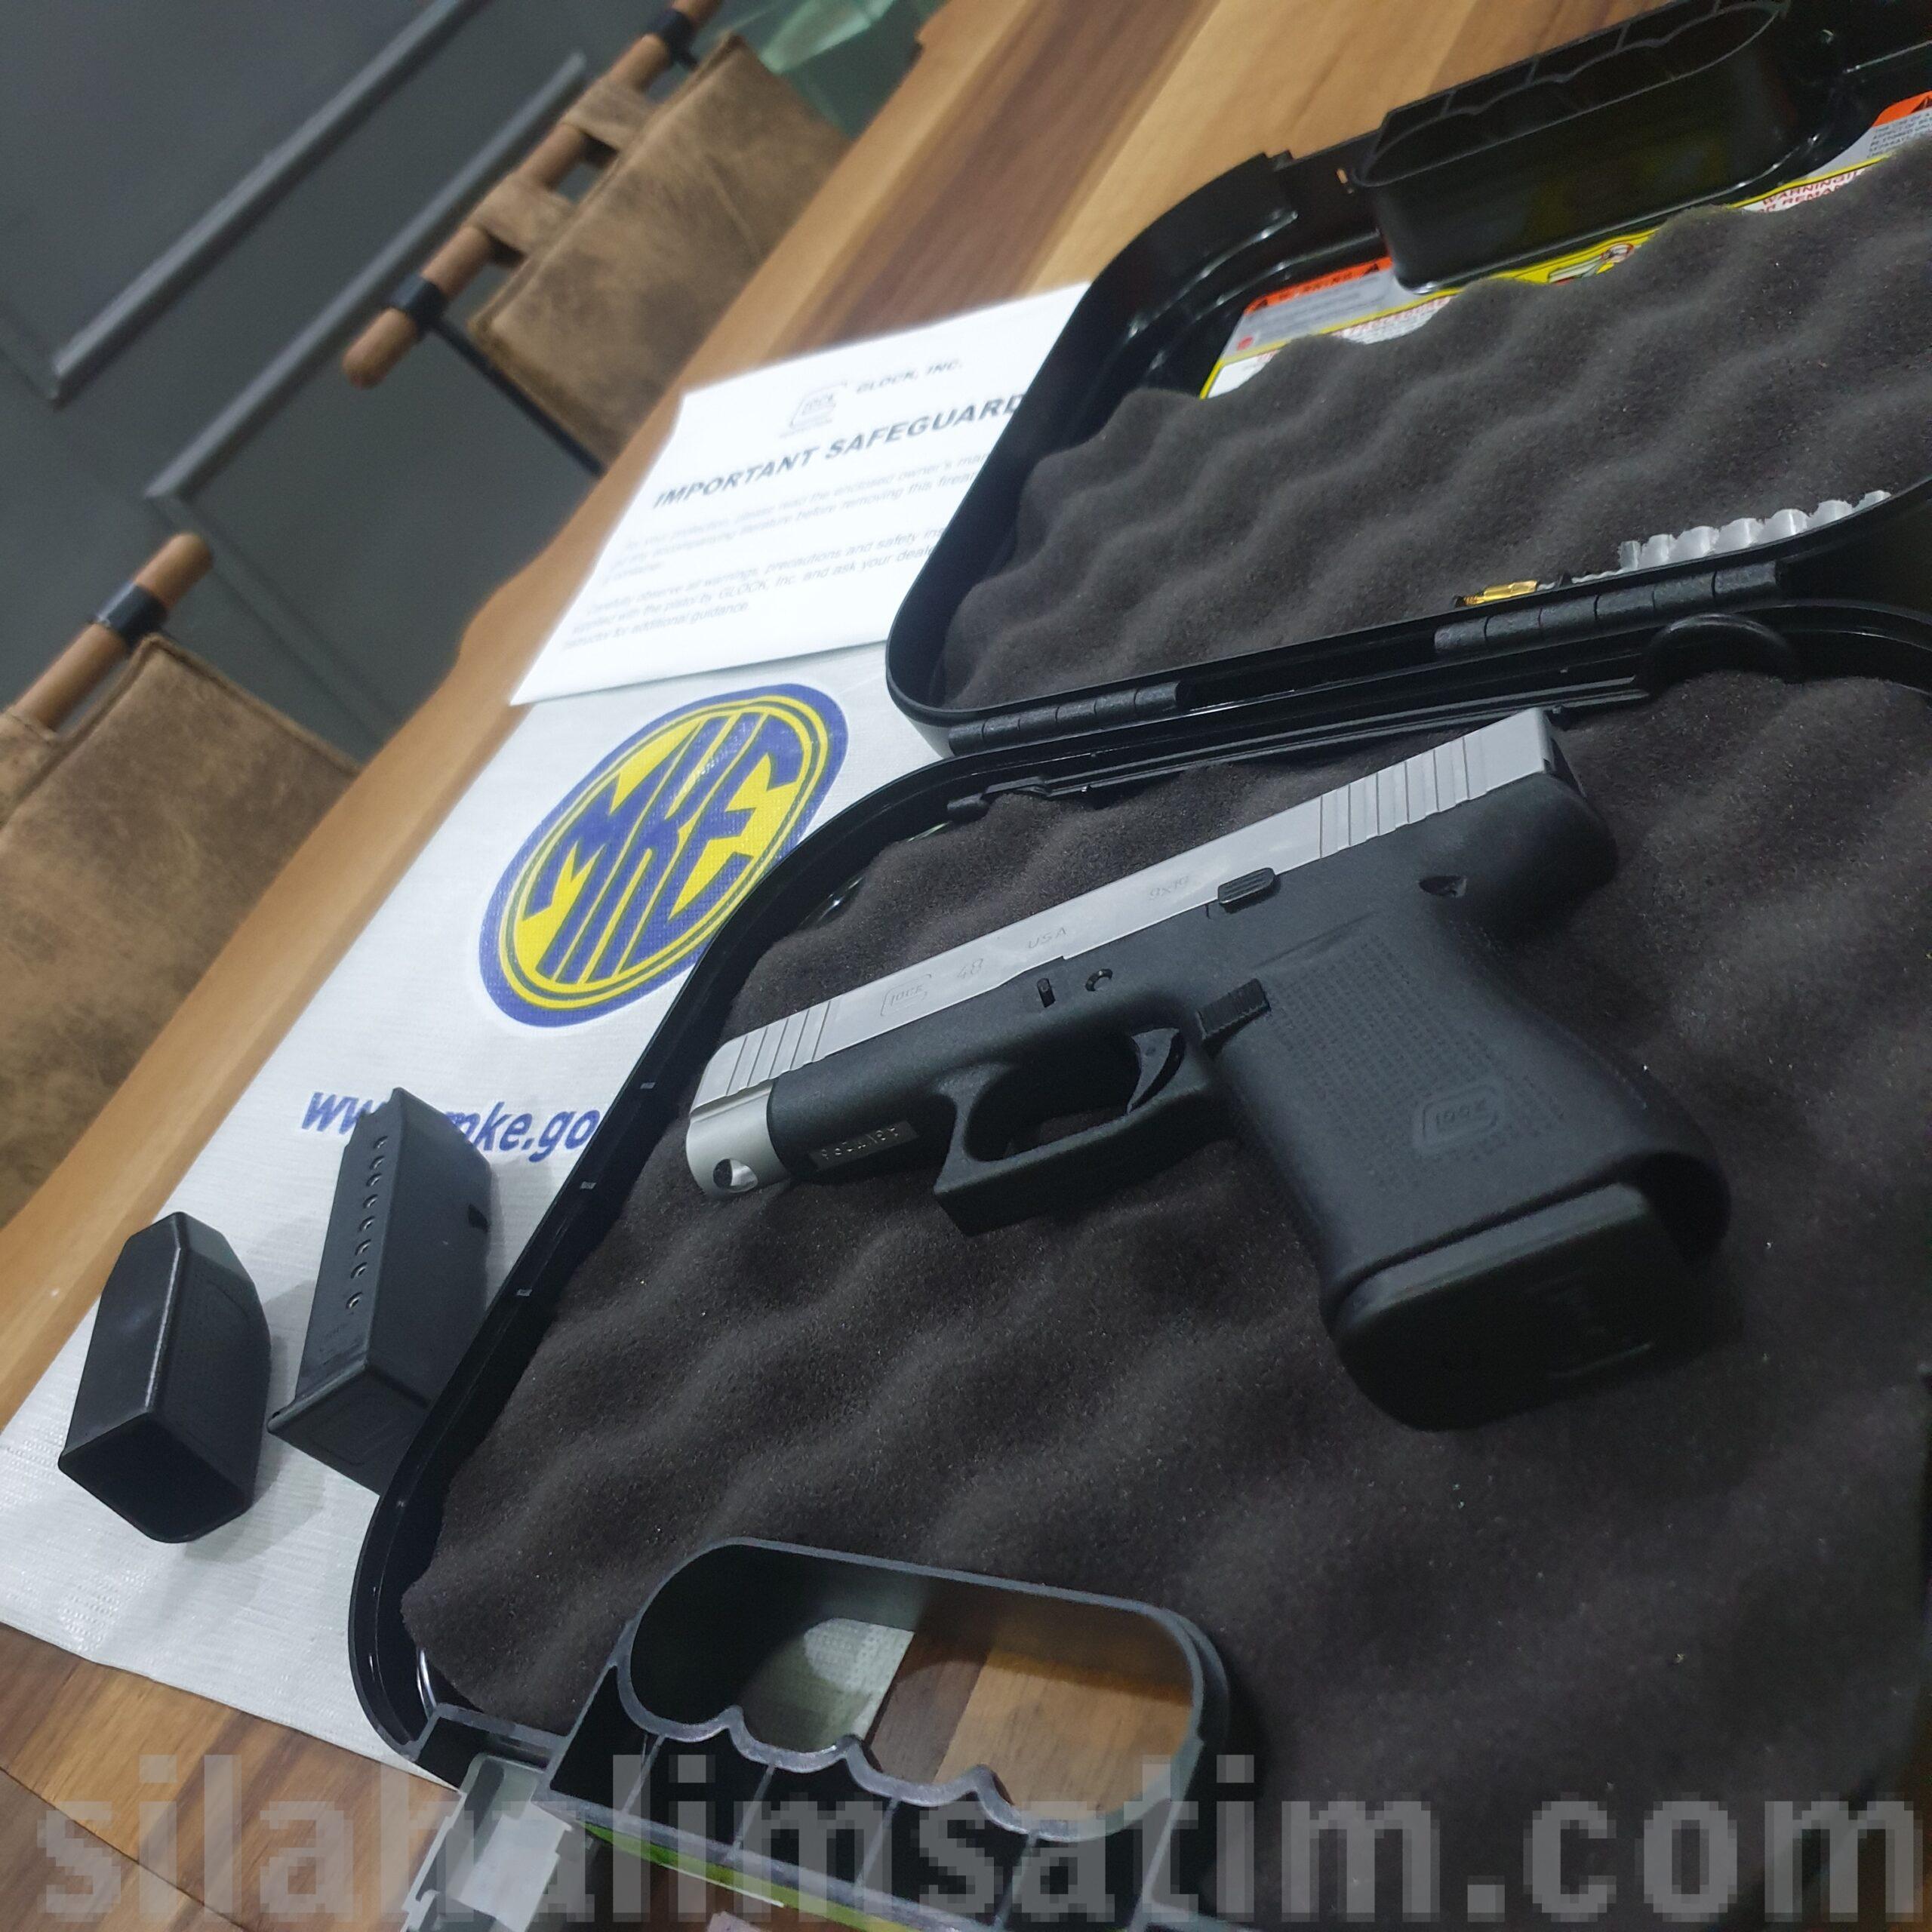 Glock 48 Gen5 SİLVER SIFIR